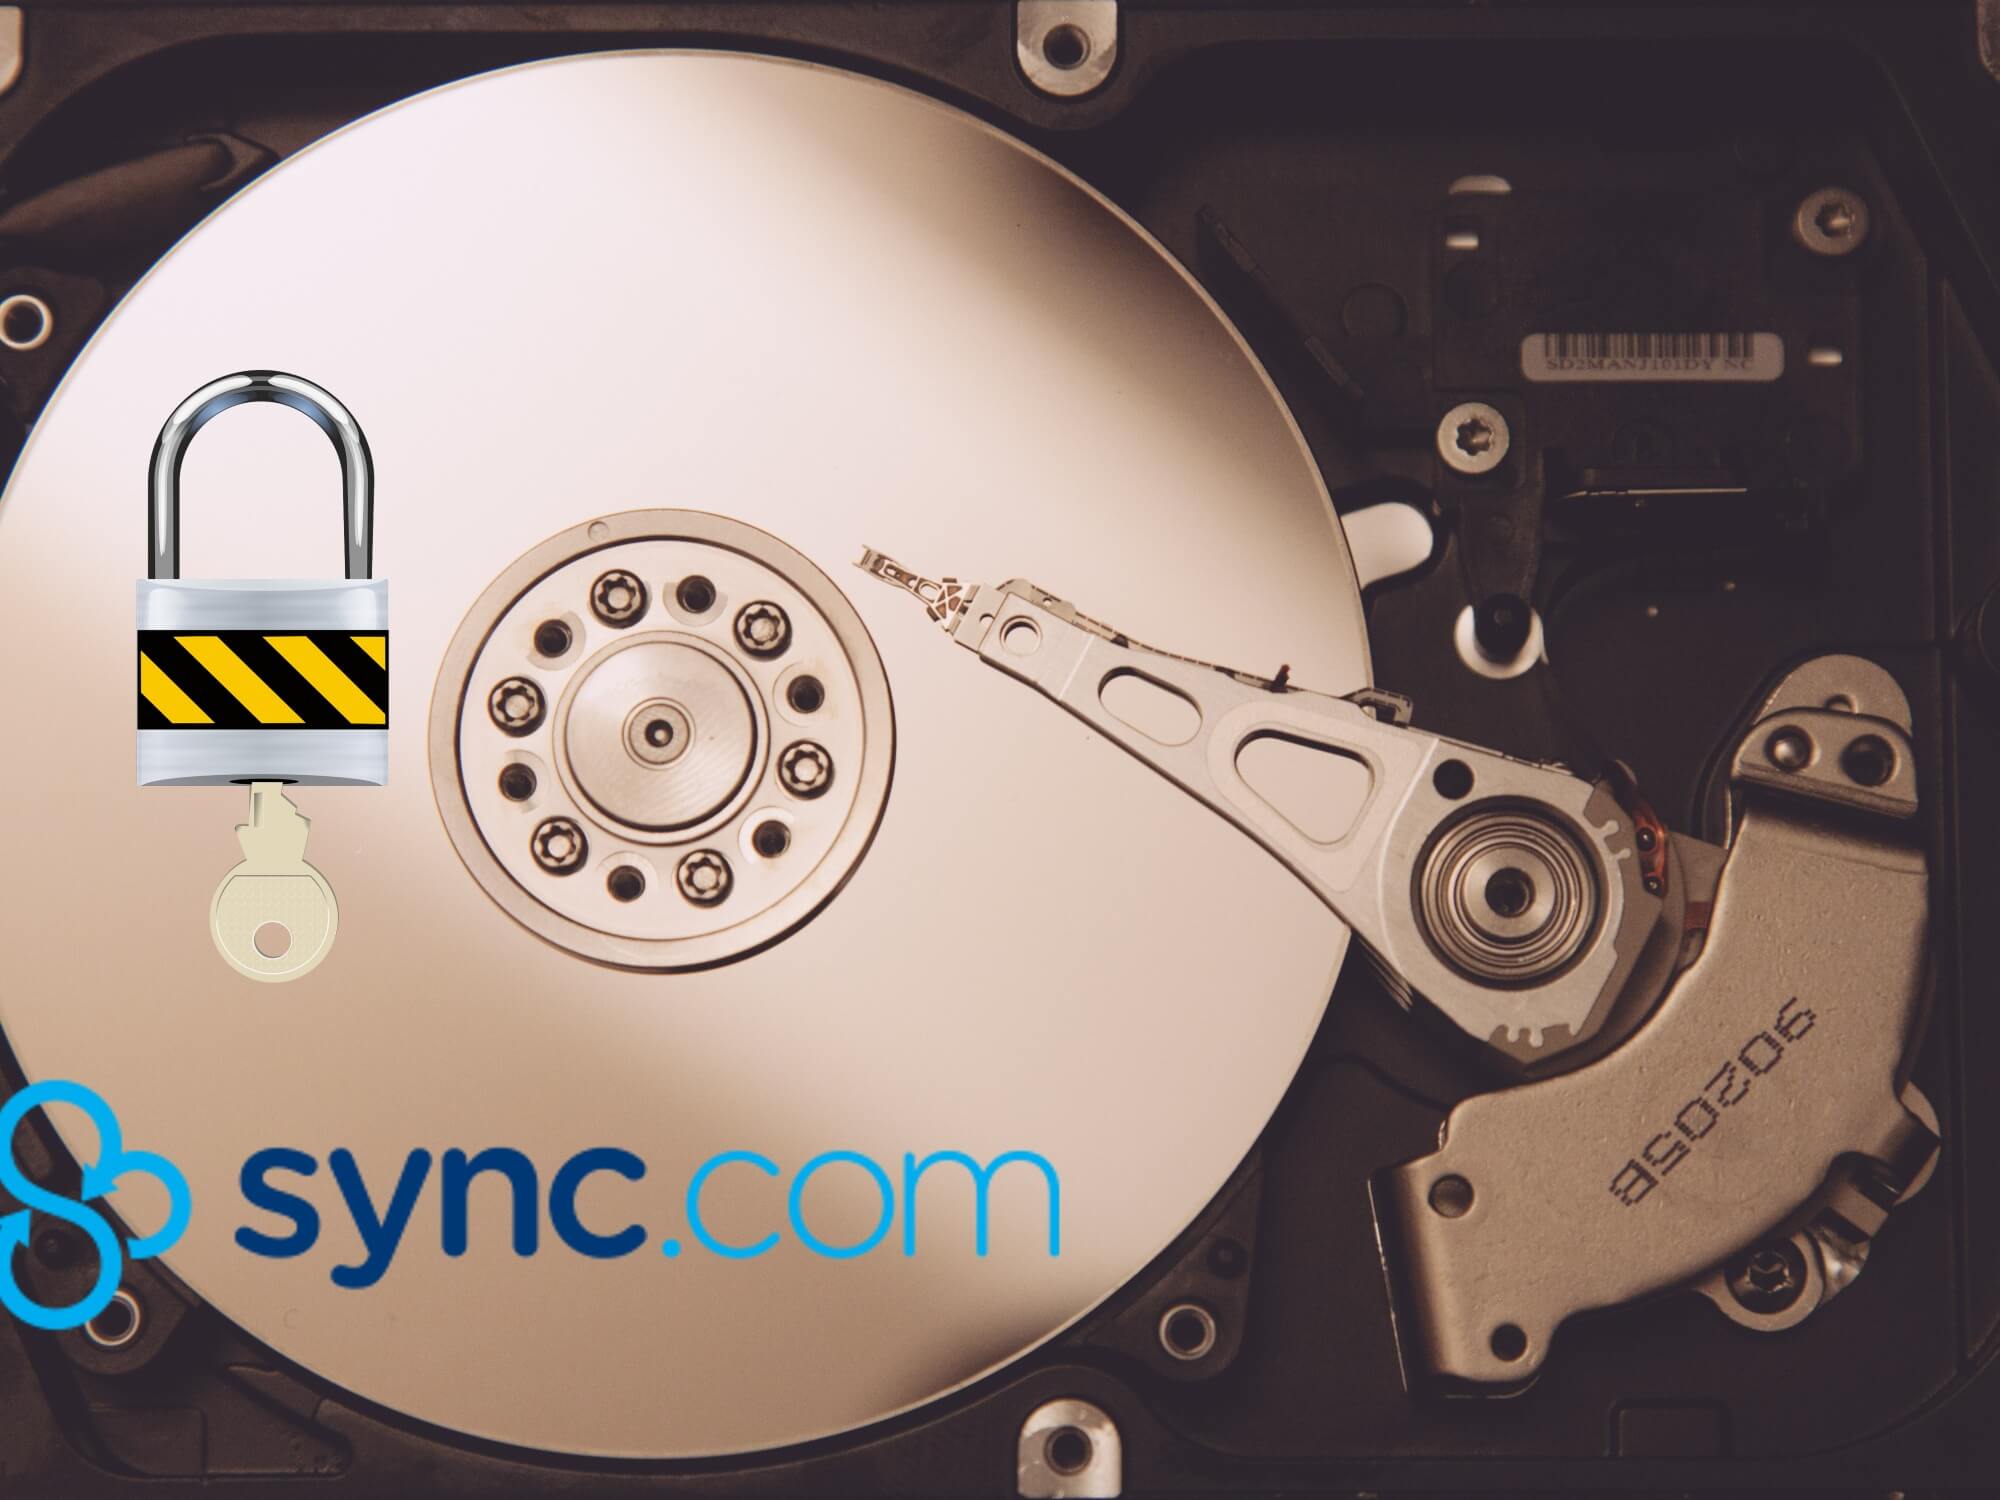 sync-com-secure-cloud-storage